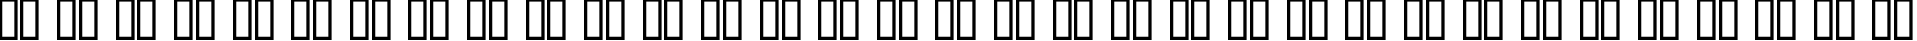 Пример написания русского алфавита шрифтом Helvetica Narrow Bold